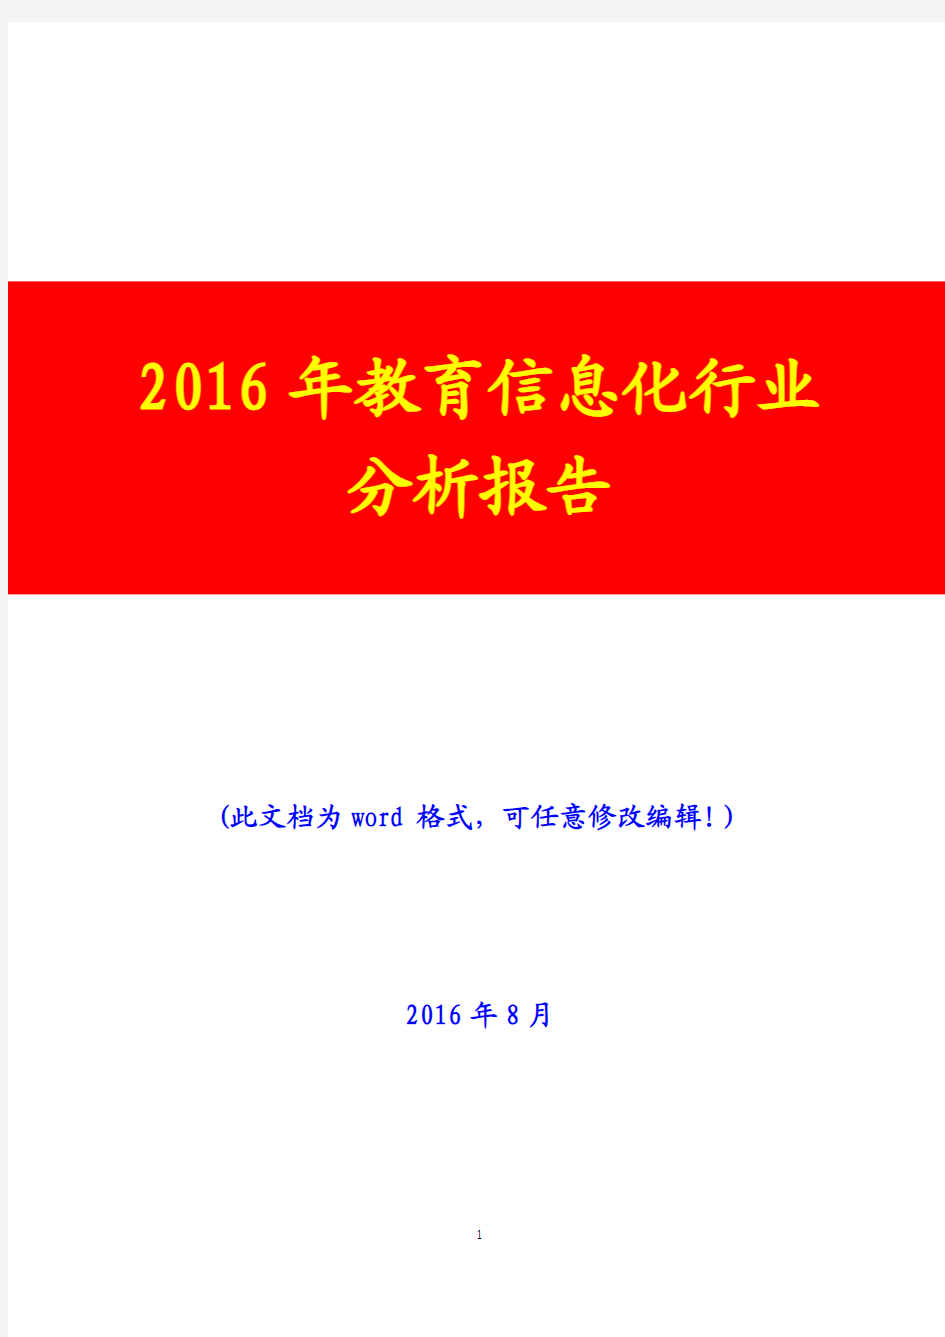 2016年教育信息化行业分析报告(经典版)